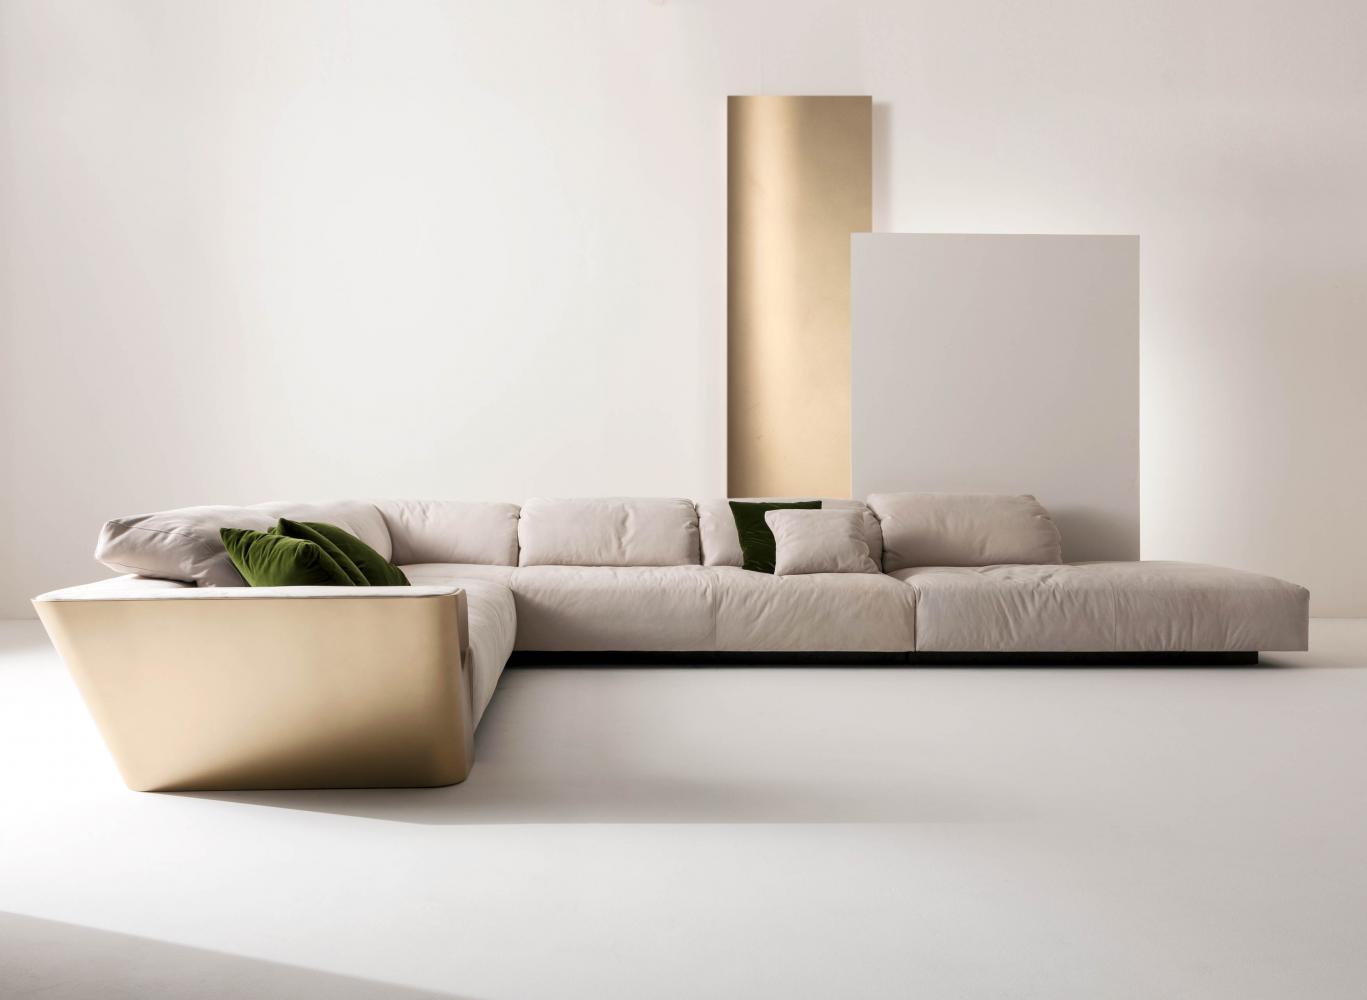 laurameroni modular customizable sofa in precious leather and gold wood